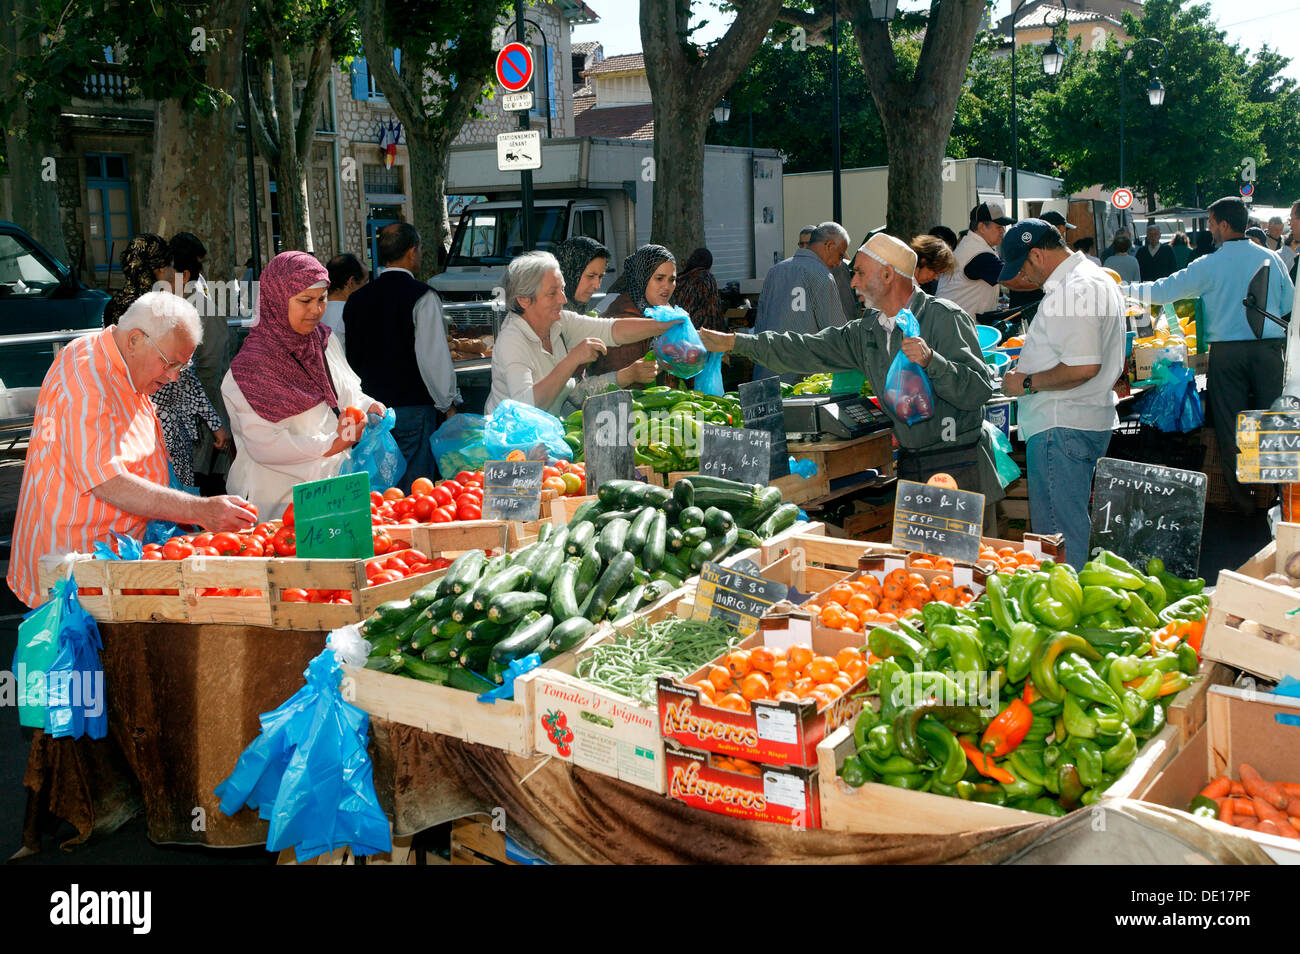 Gemüse Stall, Markt in Cavaillon, Tal der Durance, Luberon, Vaucluse, Frankreich, Europa Stockfoto